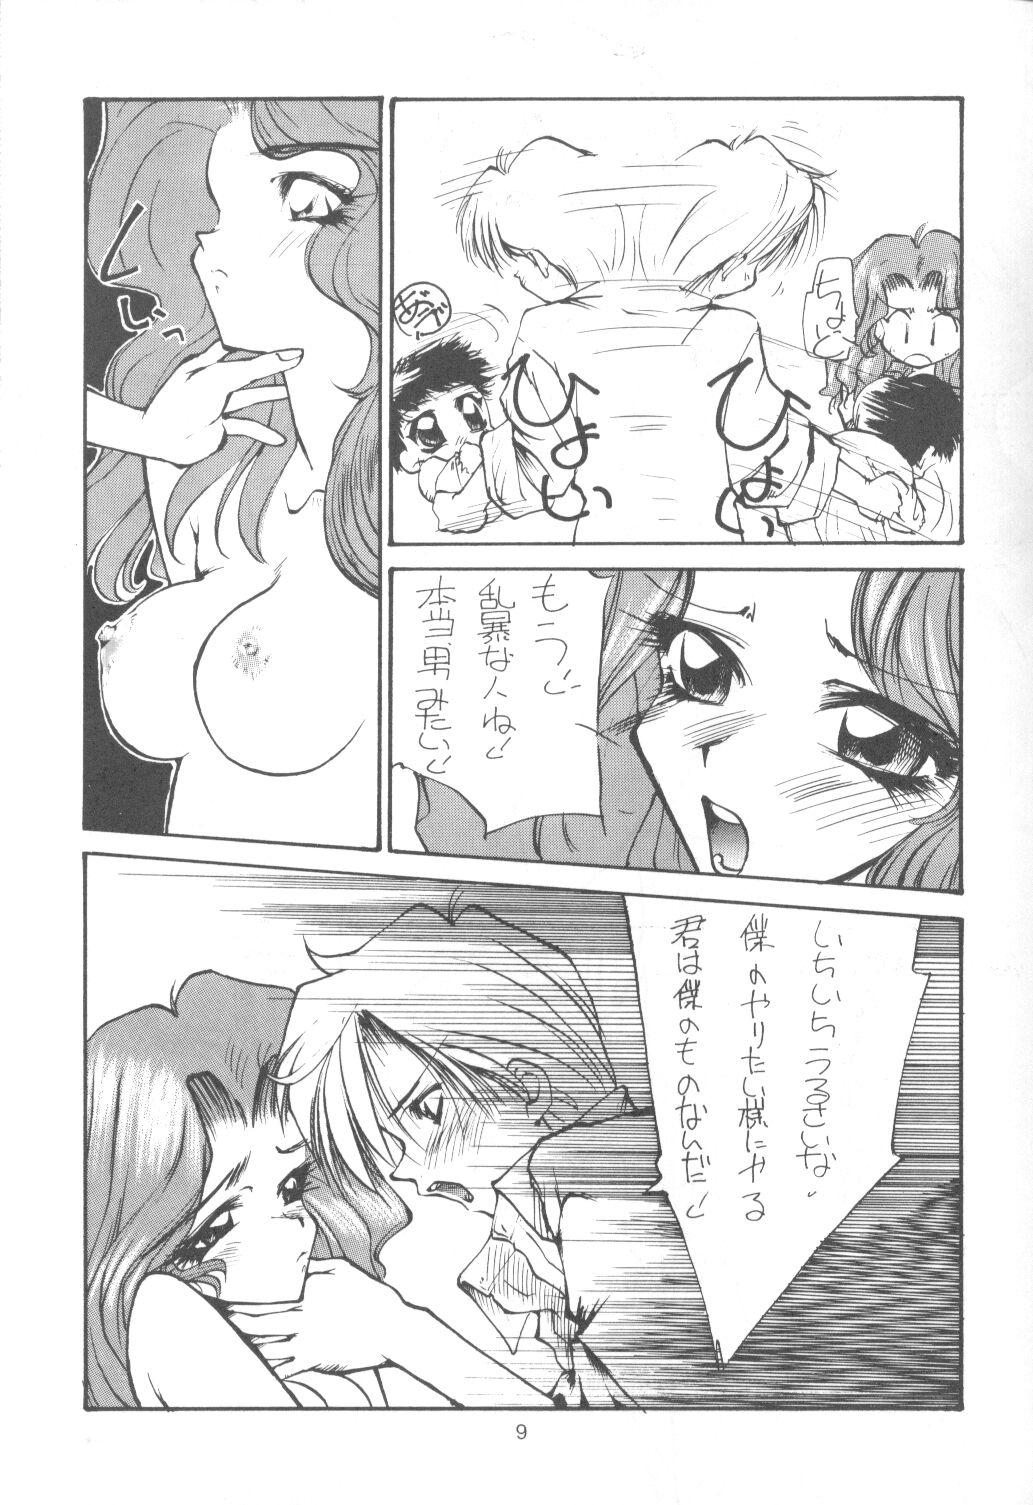 [Paradise City] Tabeta Kigasuru 9 (Sailor Moon) page 8 full